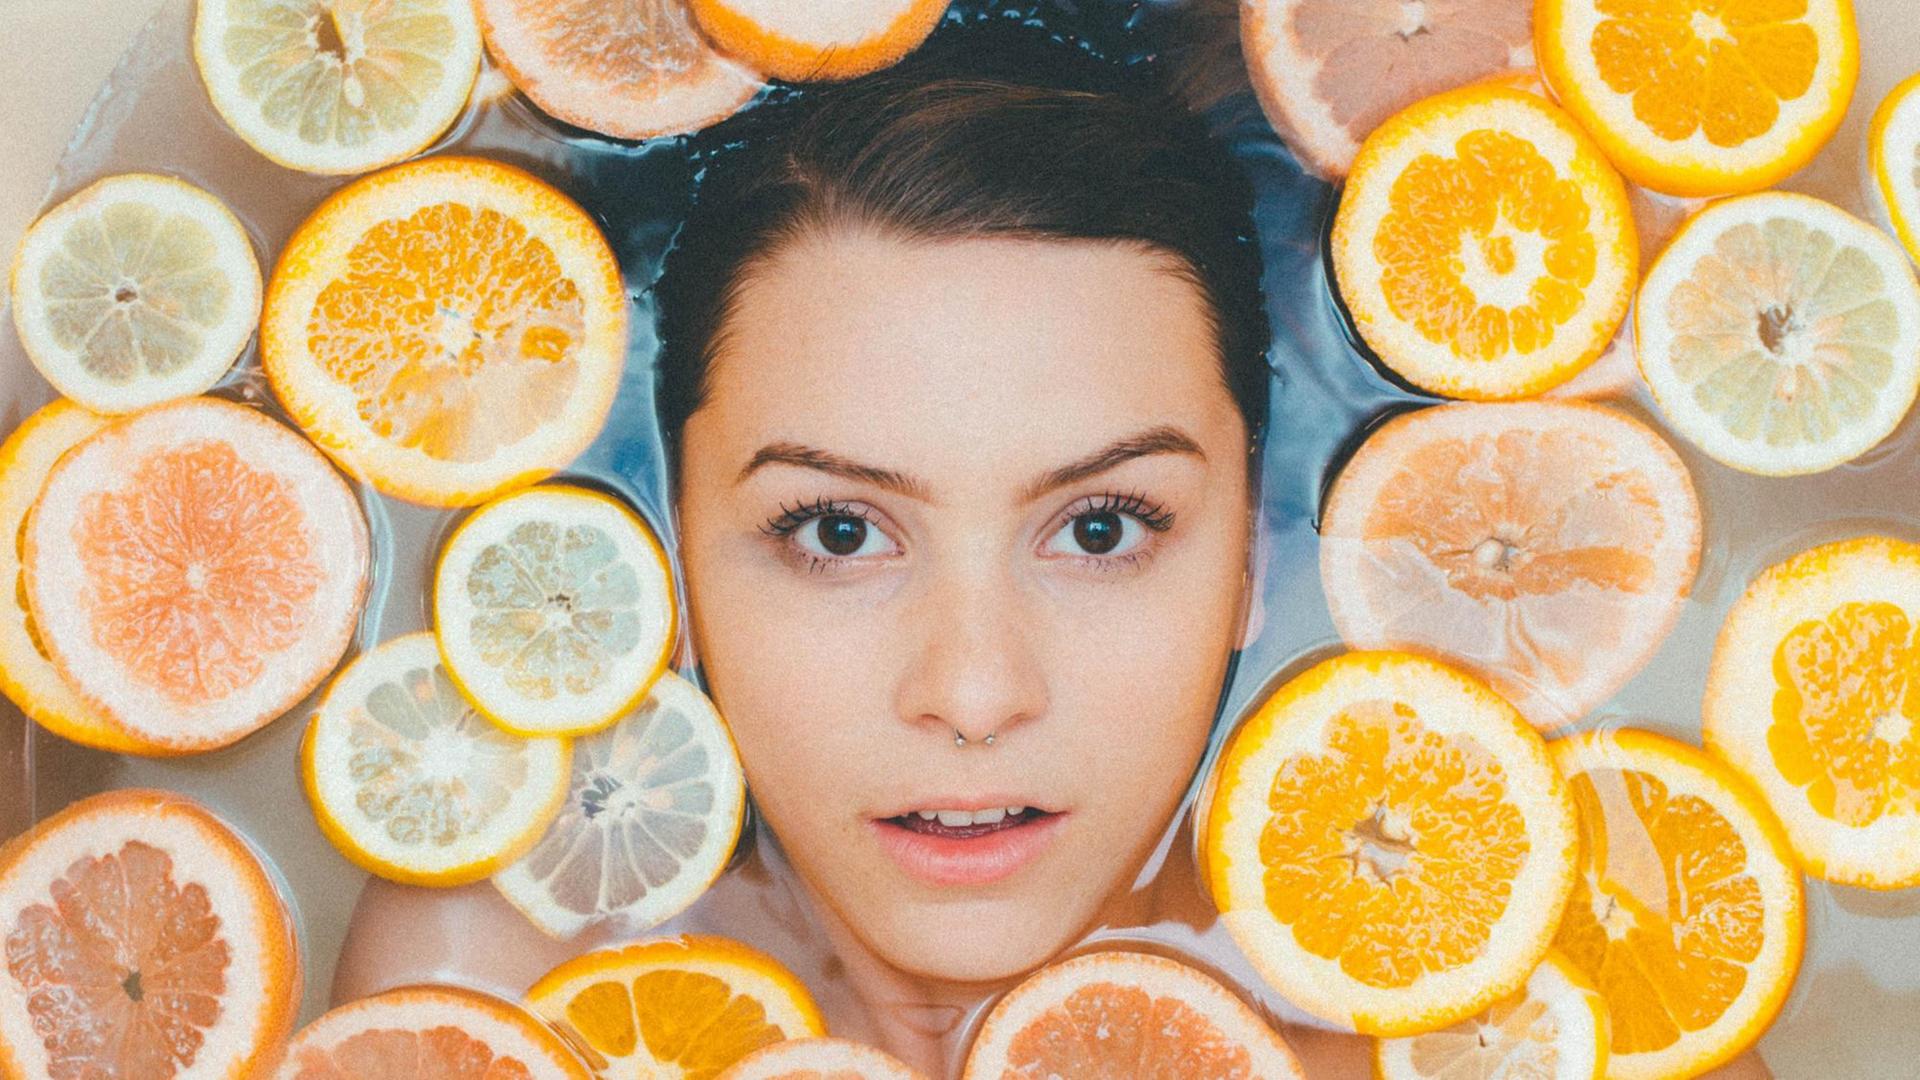 Der Kopf einer Frau mit Nasenpiercing von oben in der Badewanne liegend fotografiert, um sie herum schwimmen Orangen- und Zitronenscheiben